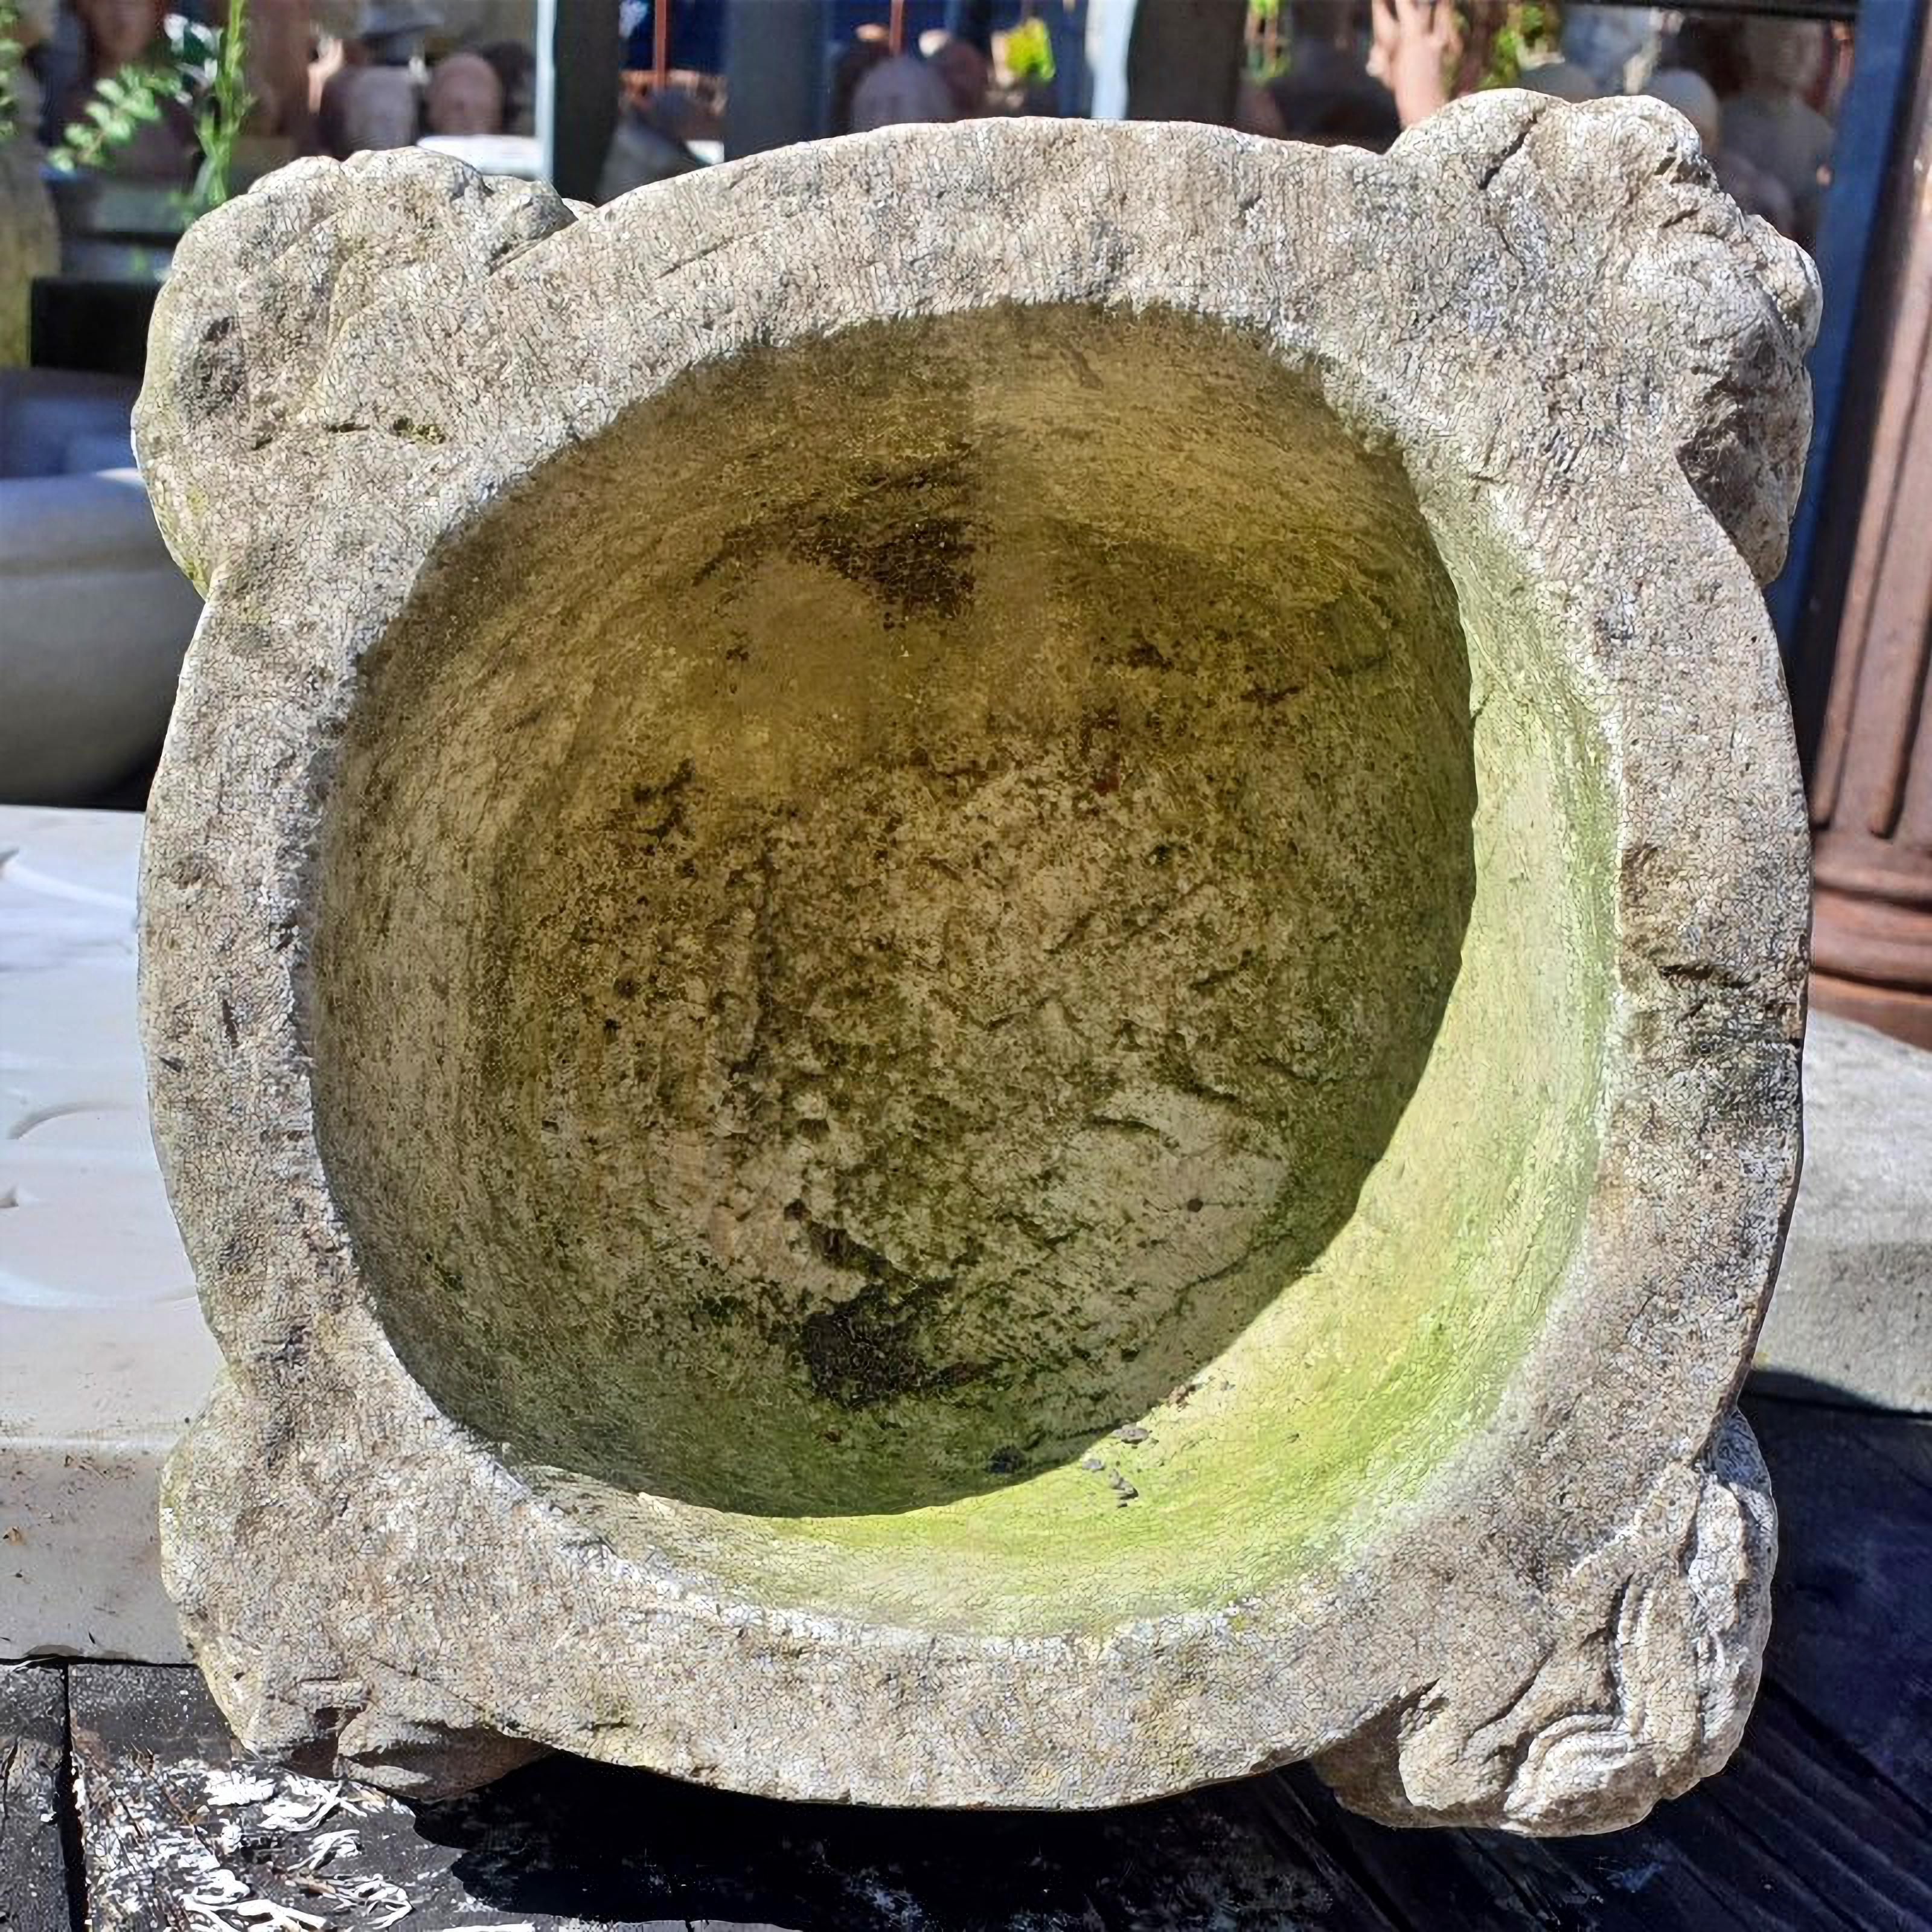 MORTAR EN PIERRE ITALIENNE DE LA FIN DU 19e SIÈCLE

Reproduction fidèle d'un mortier du XIIIe siècle en calcaire clair de Sannio.

La reproduction a été réalisée en conservant les proportions d'origine, les 4 oreilles typiques des mortiers sont